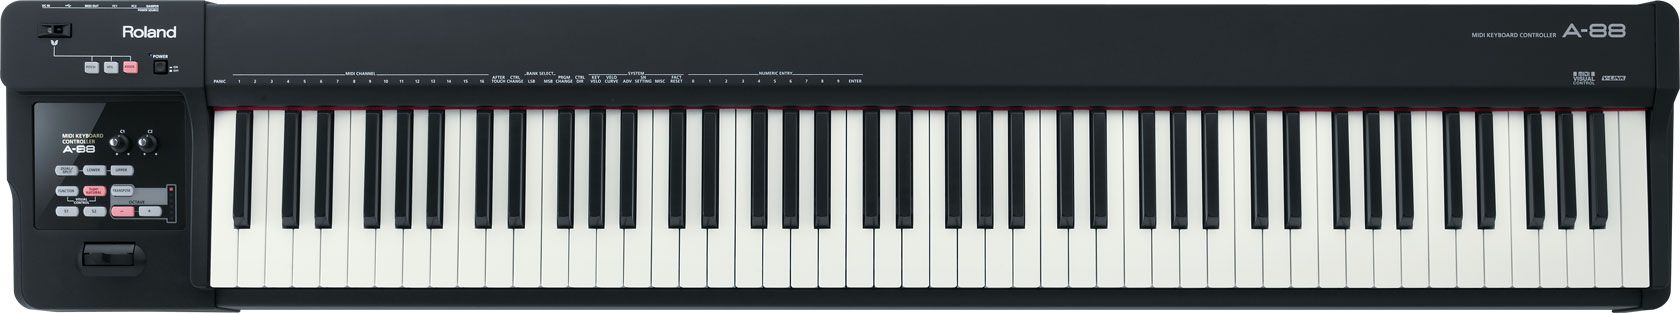 P003480-Z9E4518_Roland A-88 MIDI-controller Z9E4518-4590_MIDI controllers